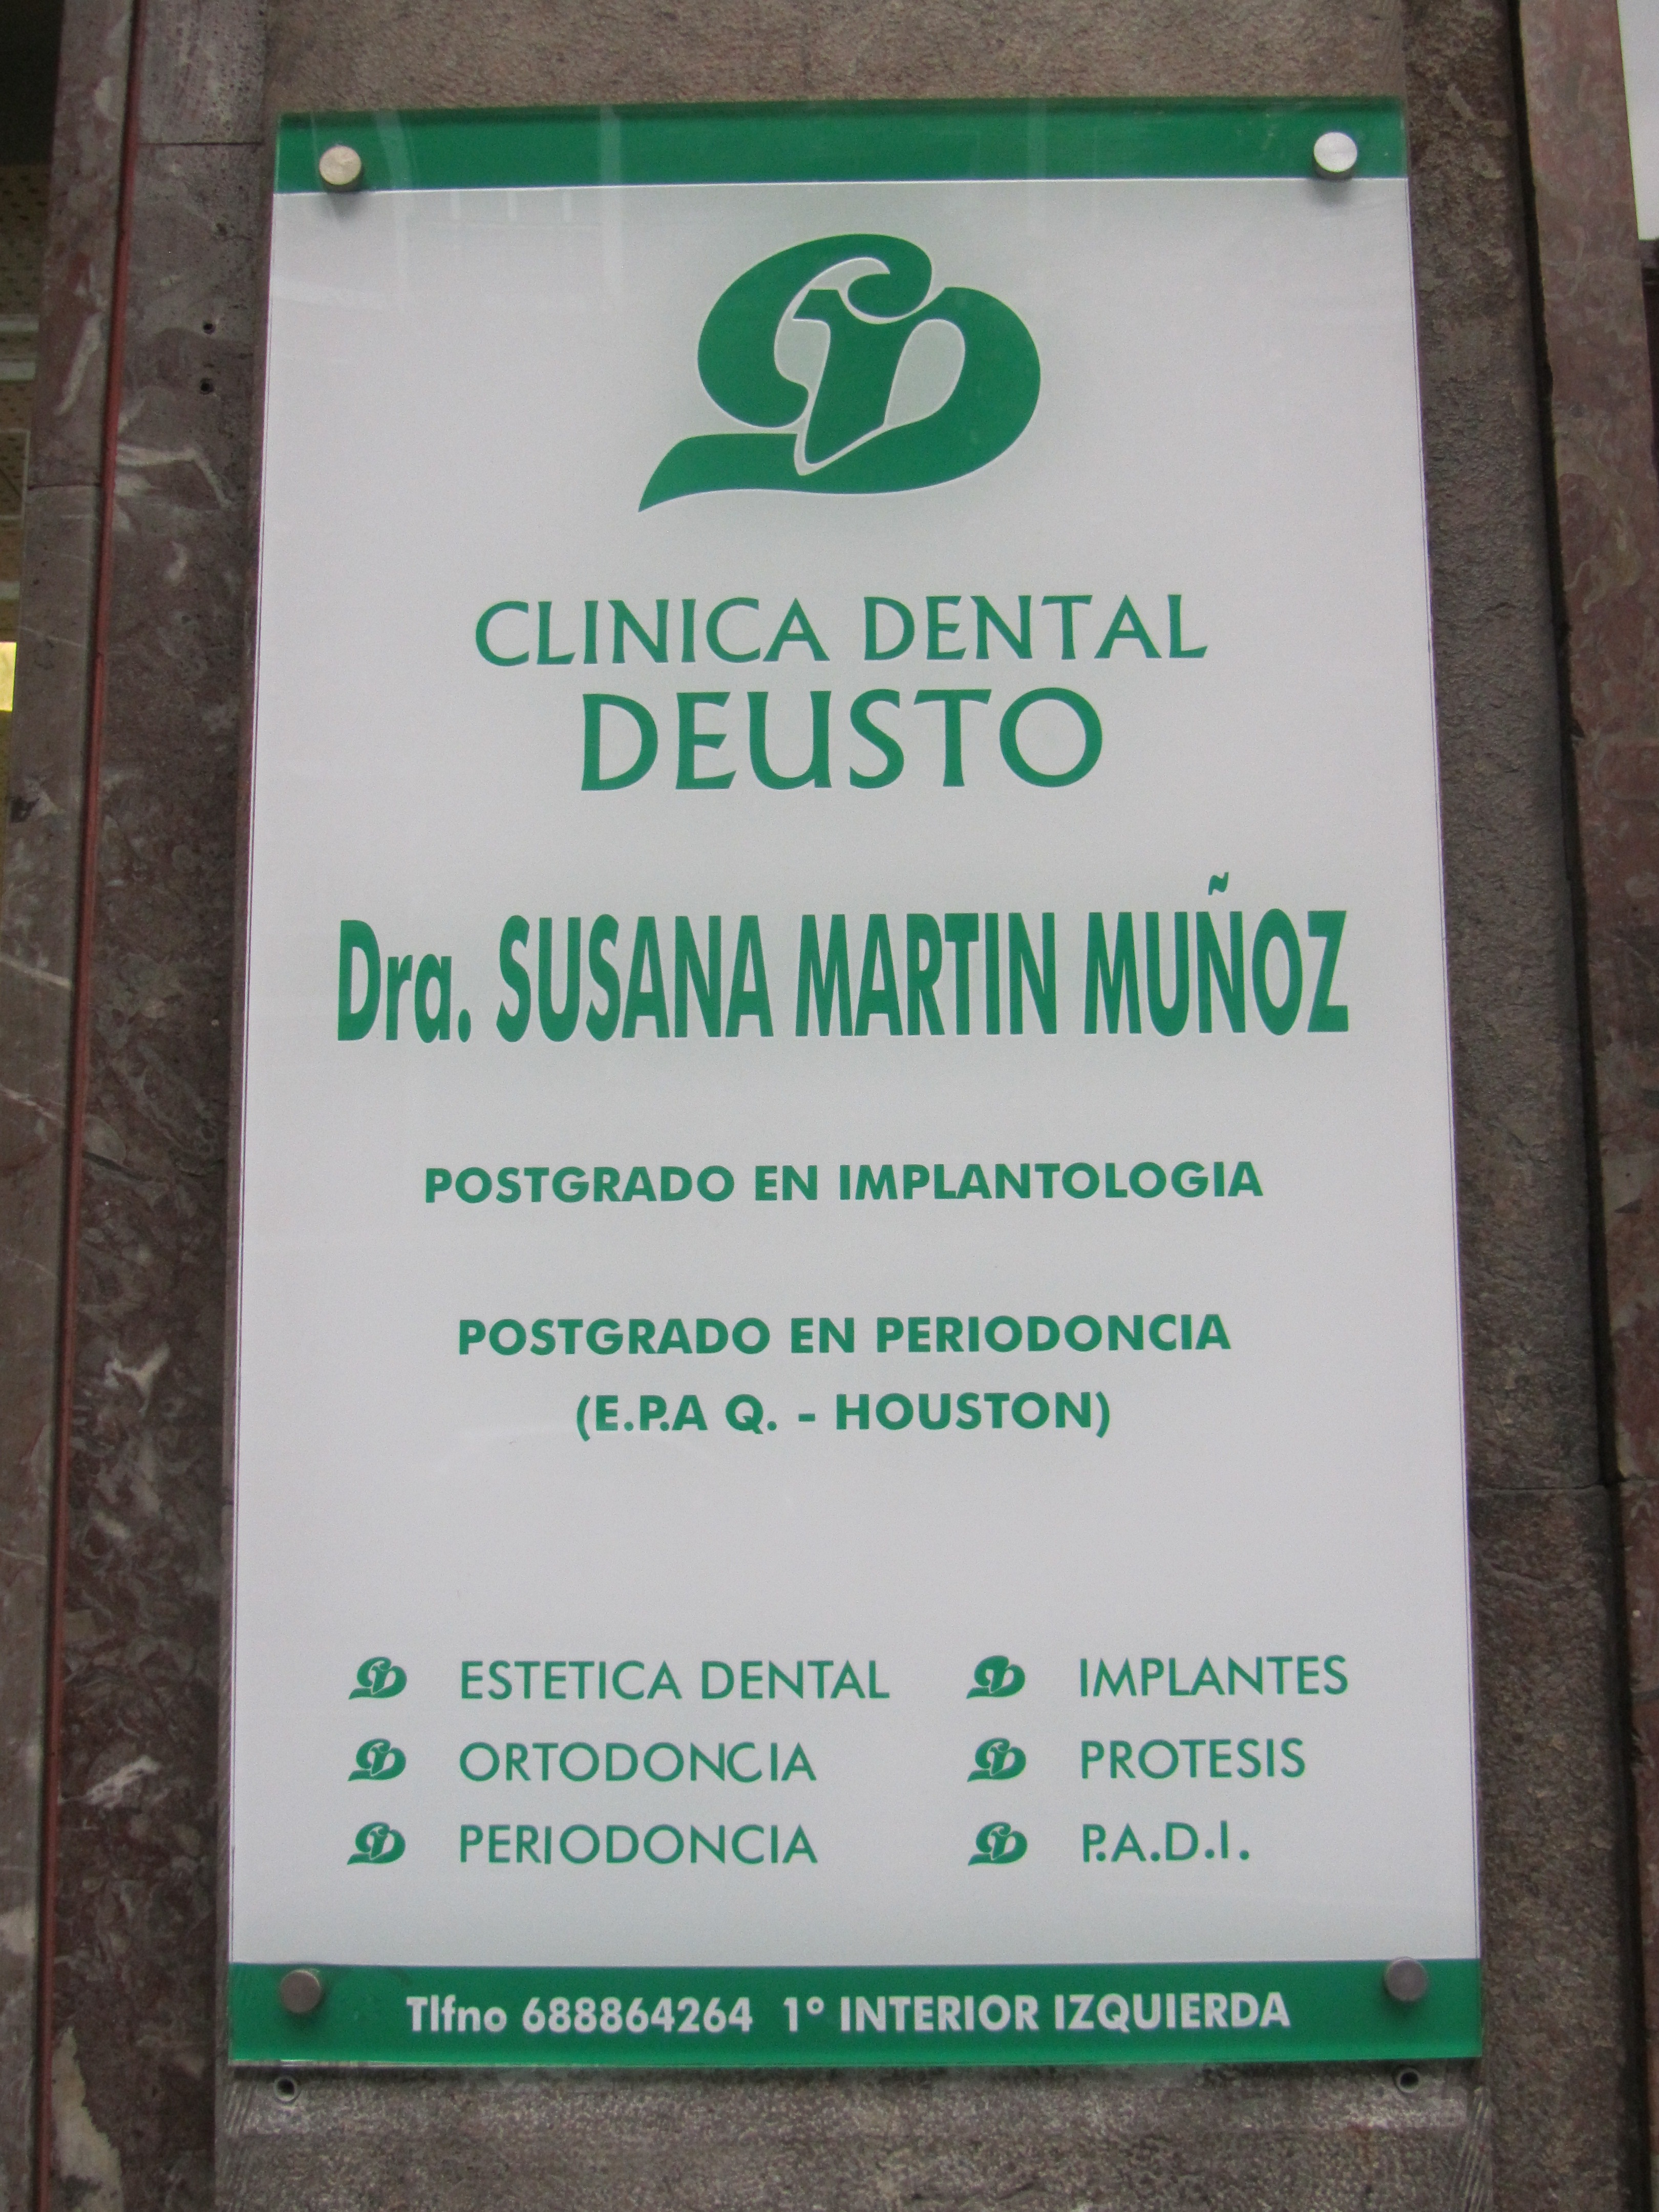 Images Clínica Dental Deusto - Susana Martín